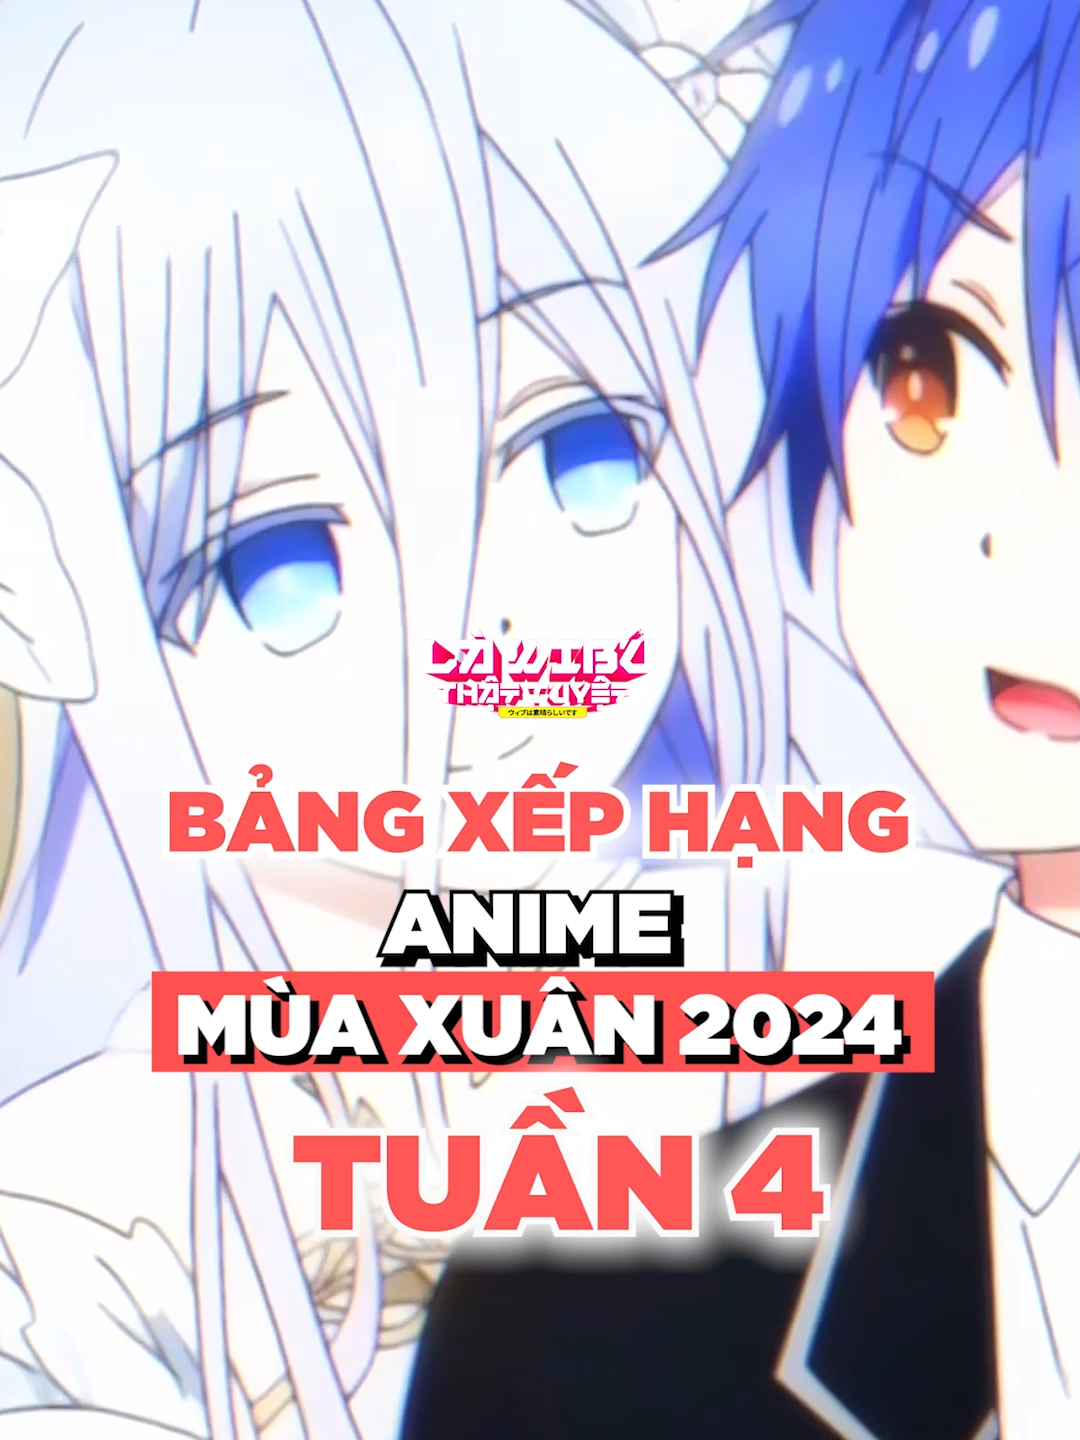 BẢNG XẾP HẠNG ANIME MÙA XUÂN 2024 - TUẦN 4 #anime #topanime #lawibuthattuyet #datealive #konosuba